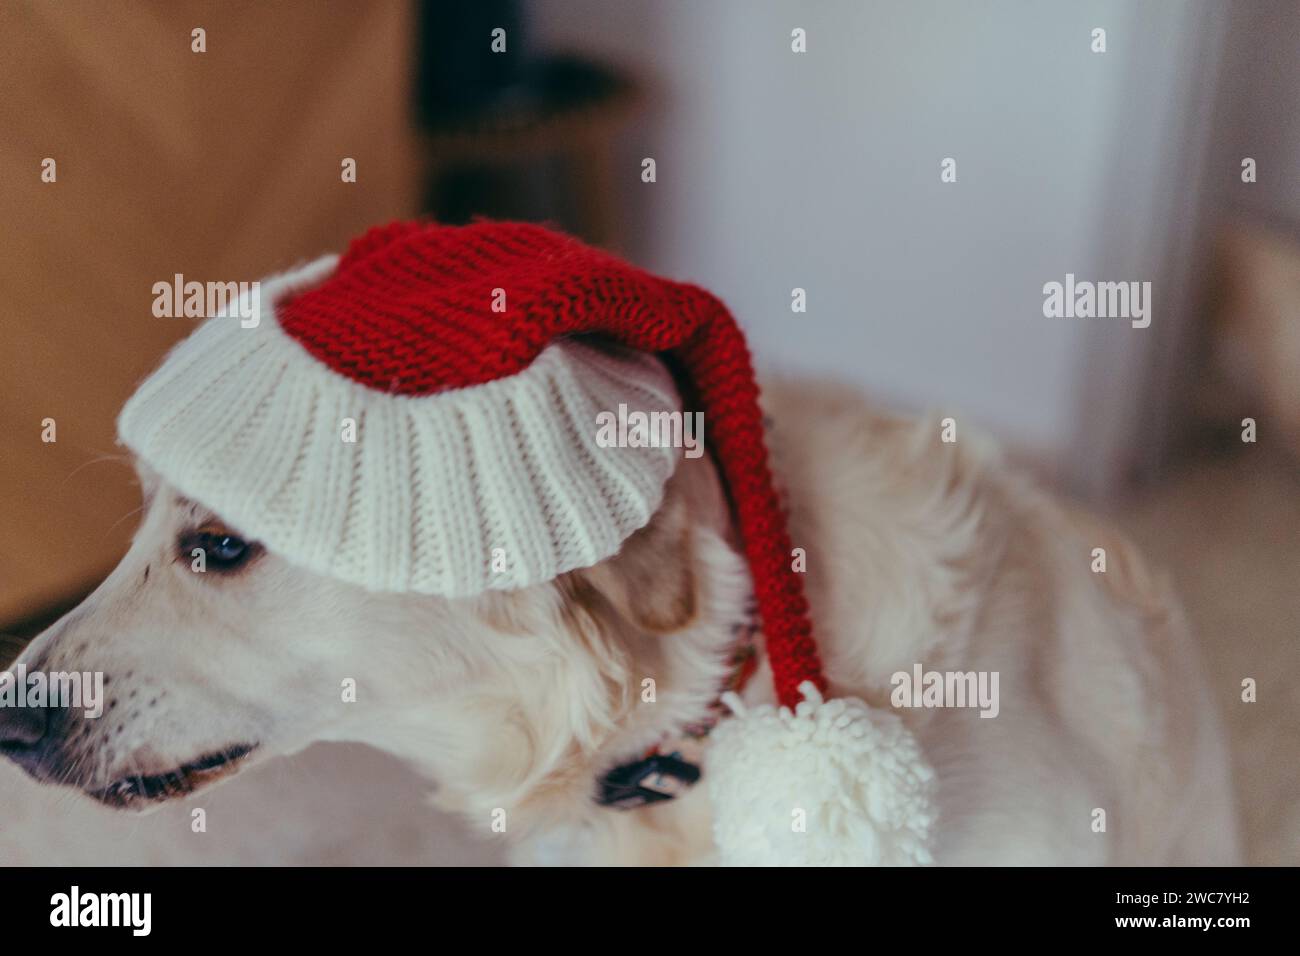 Une adorable canine avec une fourrure moelleuse est vue assis sur un tapis confortable orné de décorations festives Banque D'Images